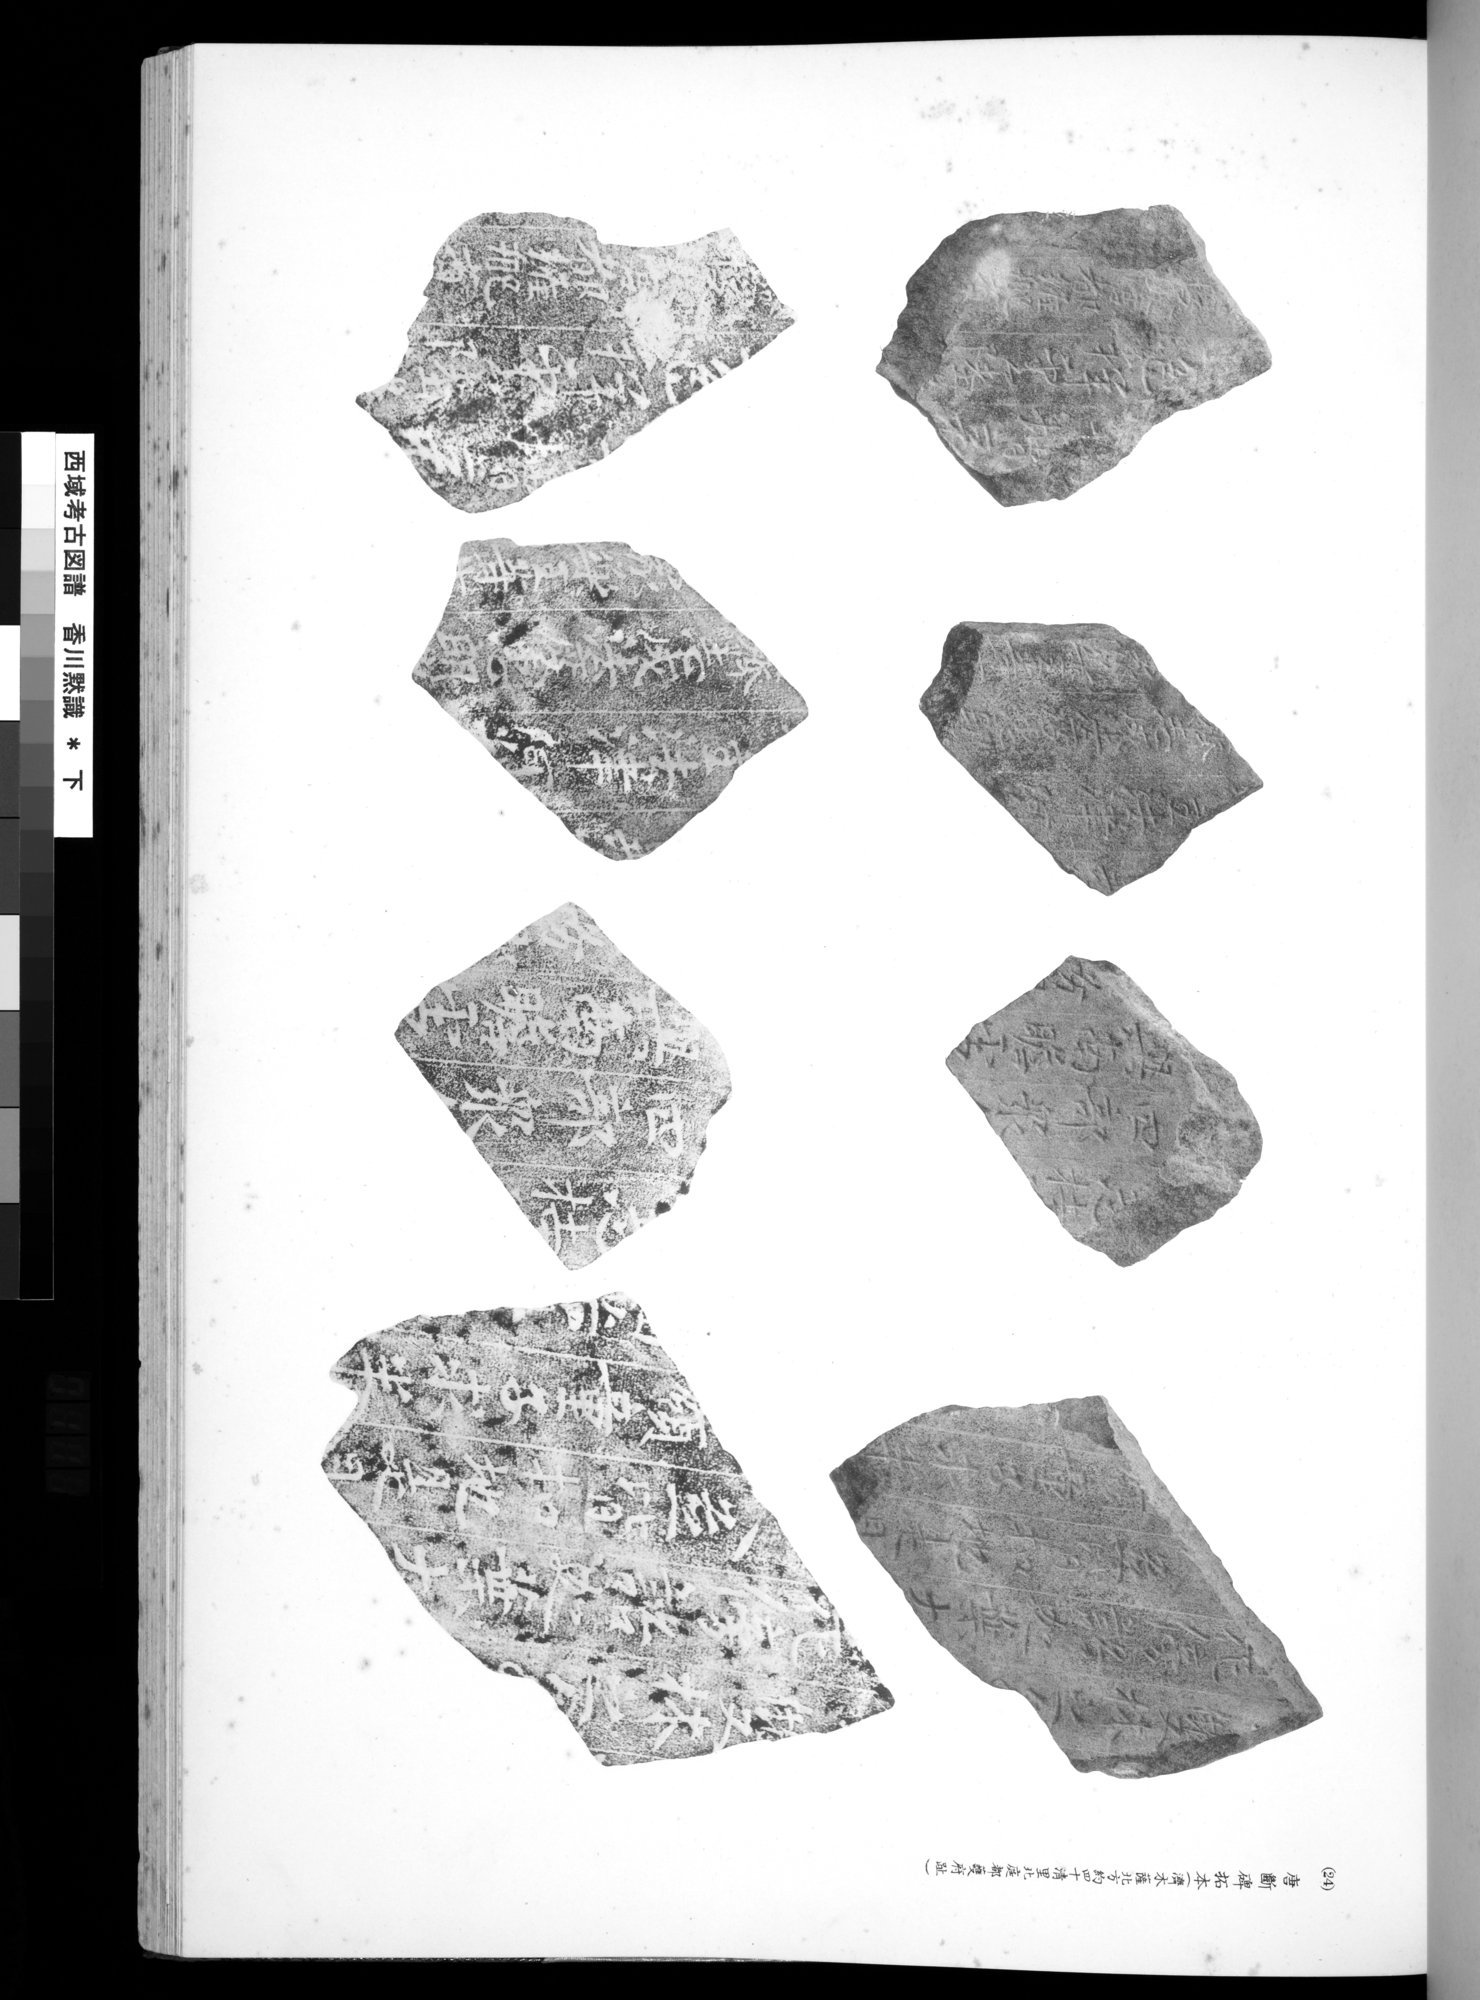 西域考古図譜 : vol.2 / Page 221 (Grayscale High Resolution Image)